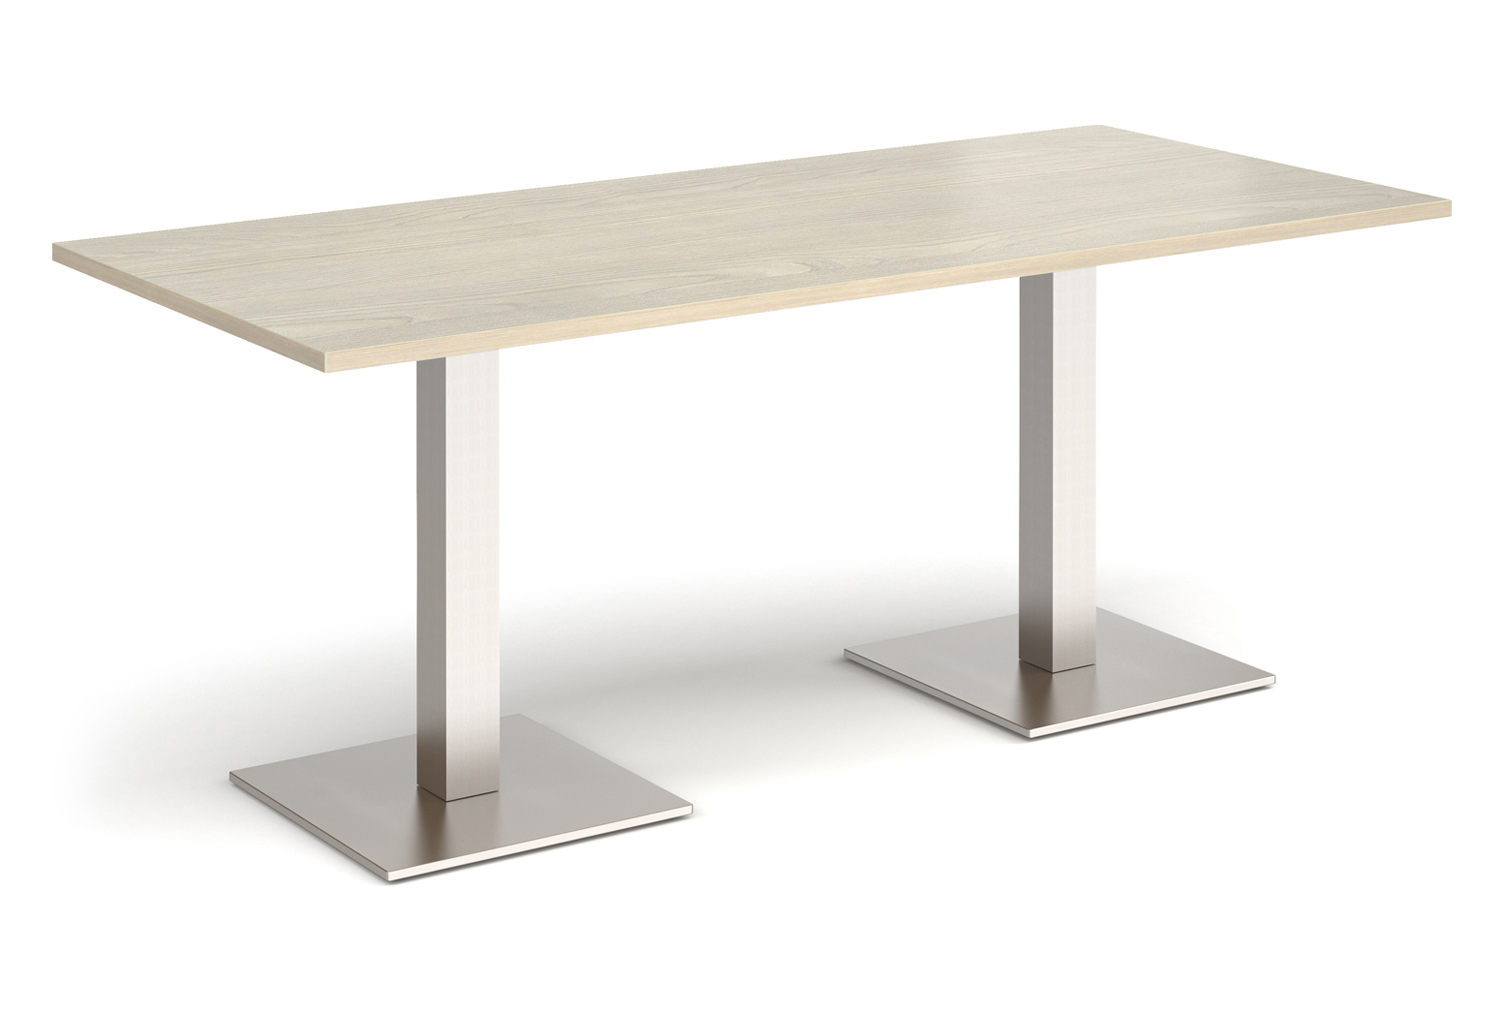 Erding Deluxe Rectangular Dining Table, 180wx80dx73h (cm), White